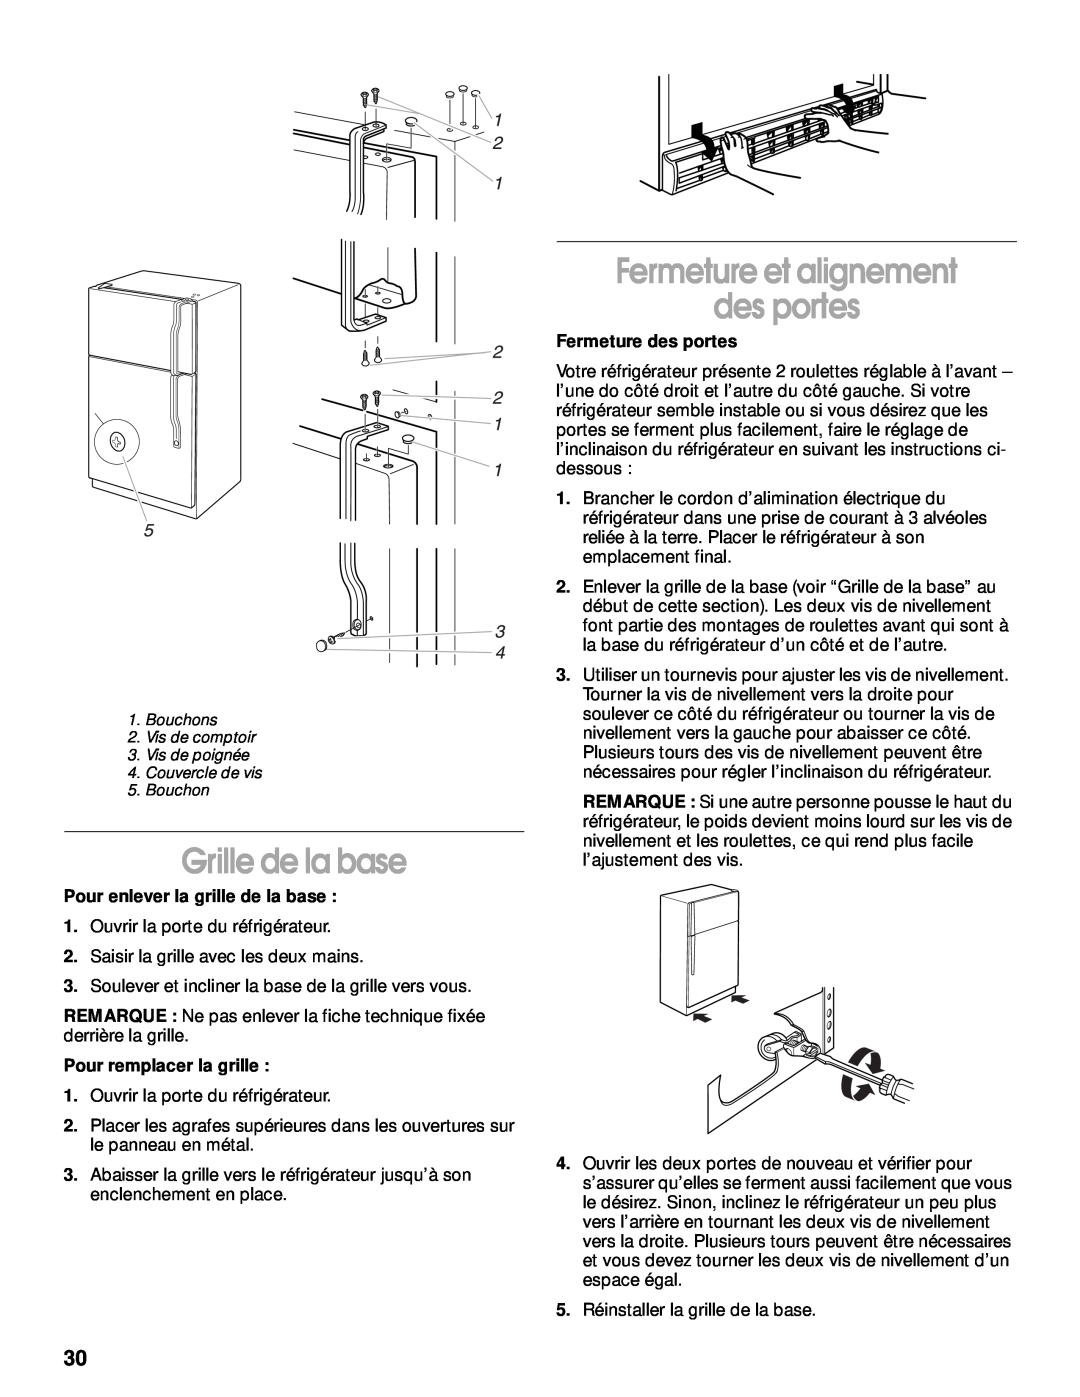 Whirlpool 2199011 manual Grille de la base, Fermeture et alignement des portes, Pour enlever la grille de la base 